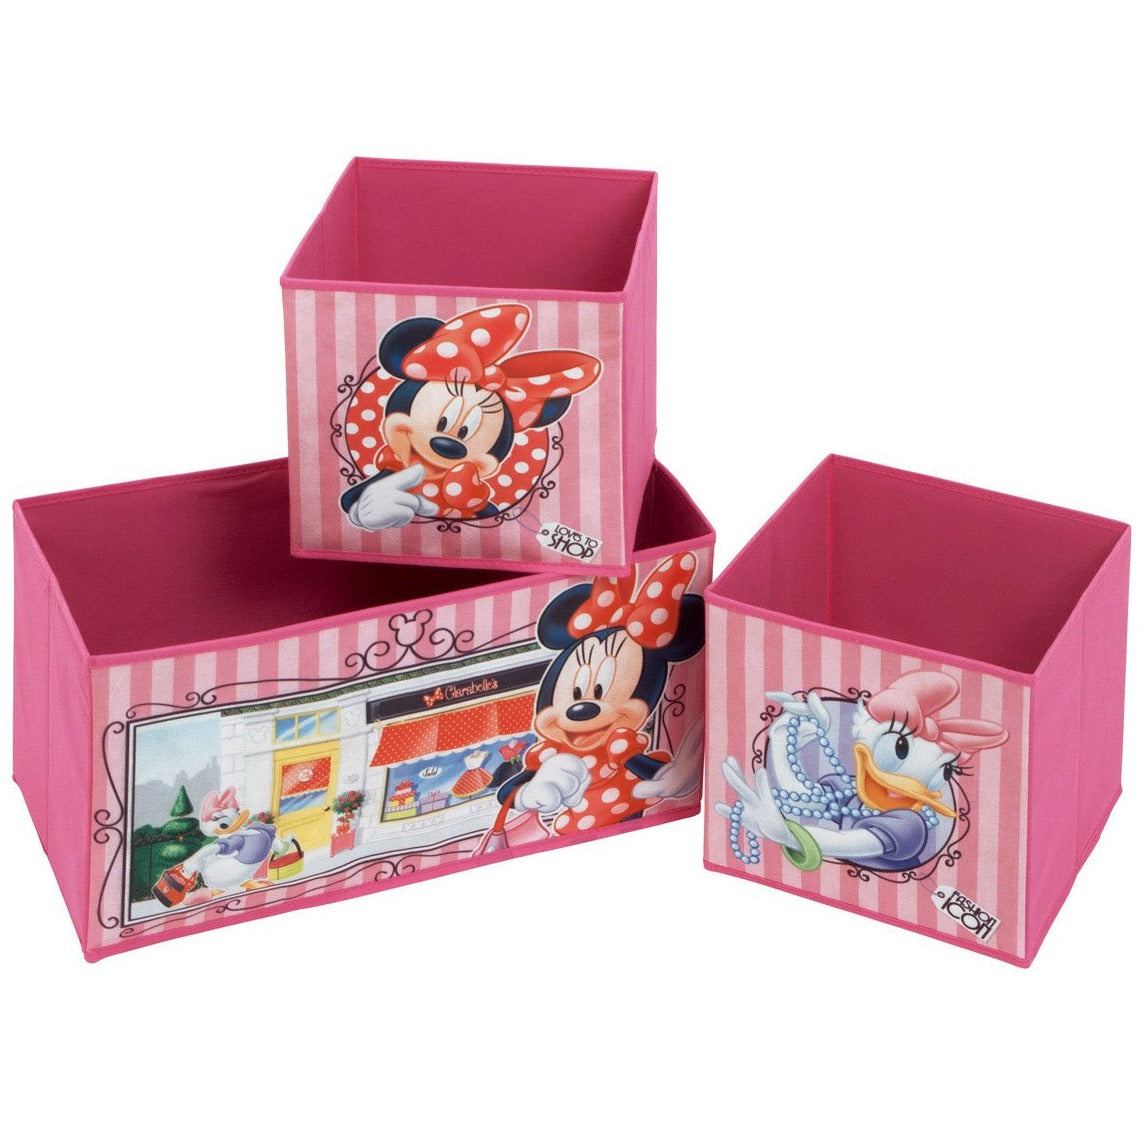 Minnie Mouse Storage Shelf With 3 Fabric Bins